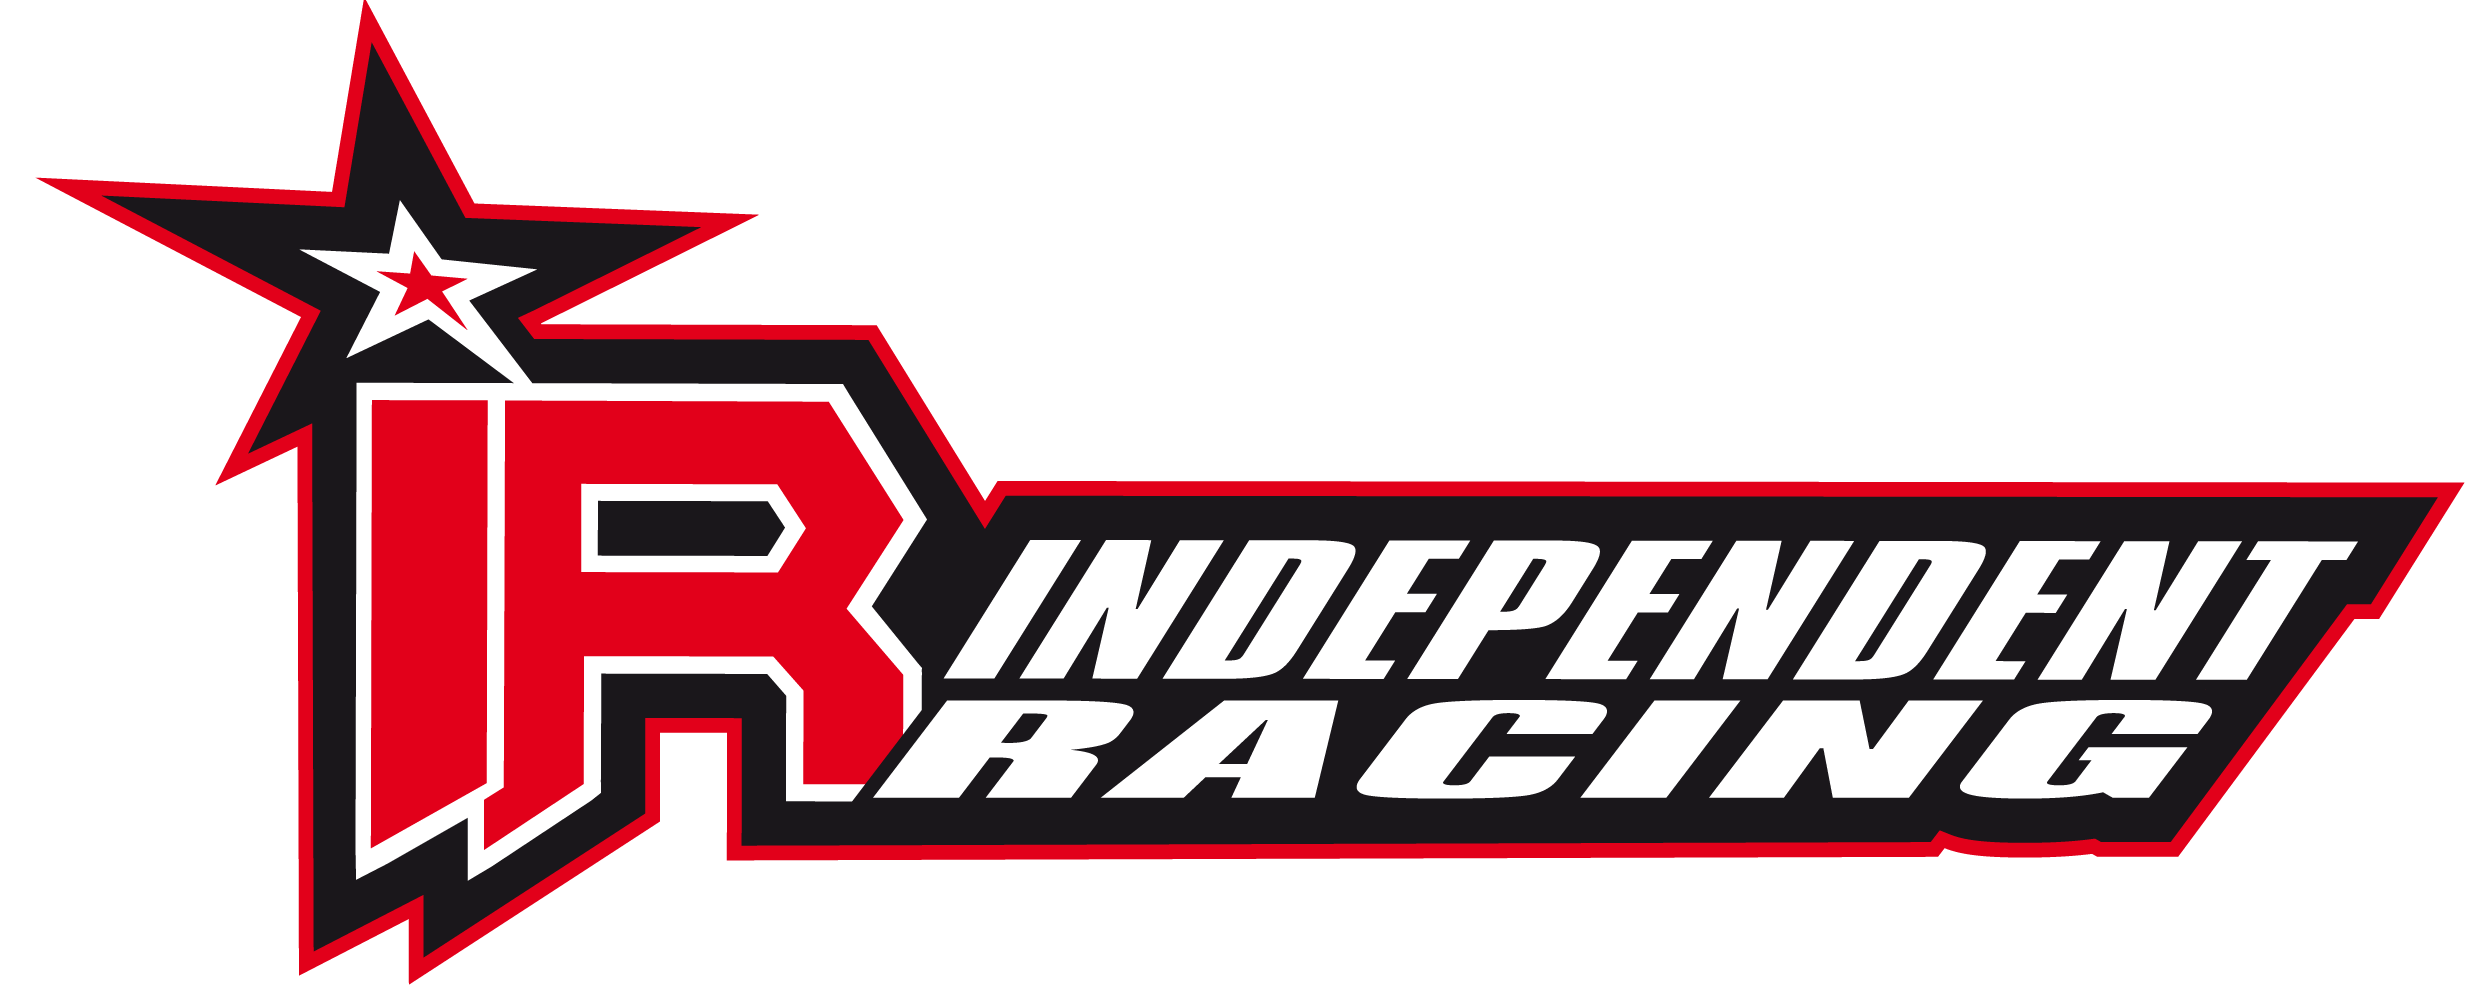 Red Racing Logo - Racing Cars: Racing Cars Logos